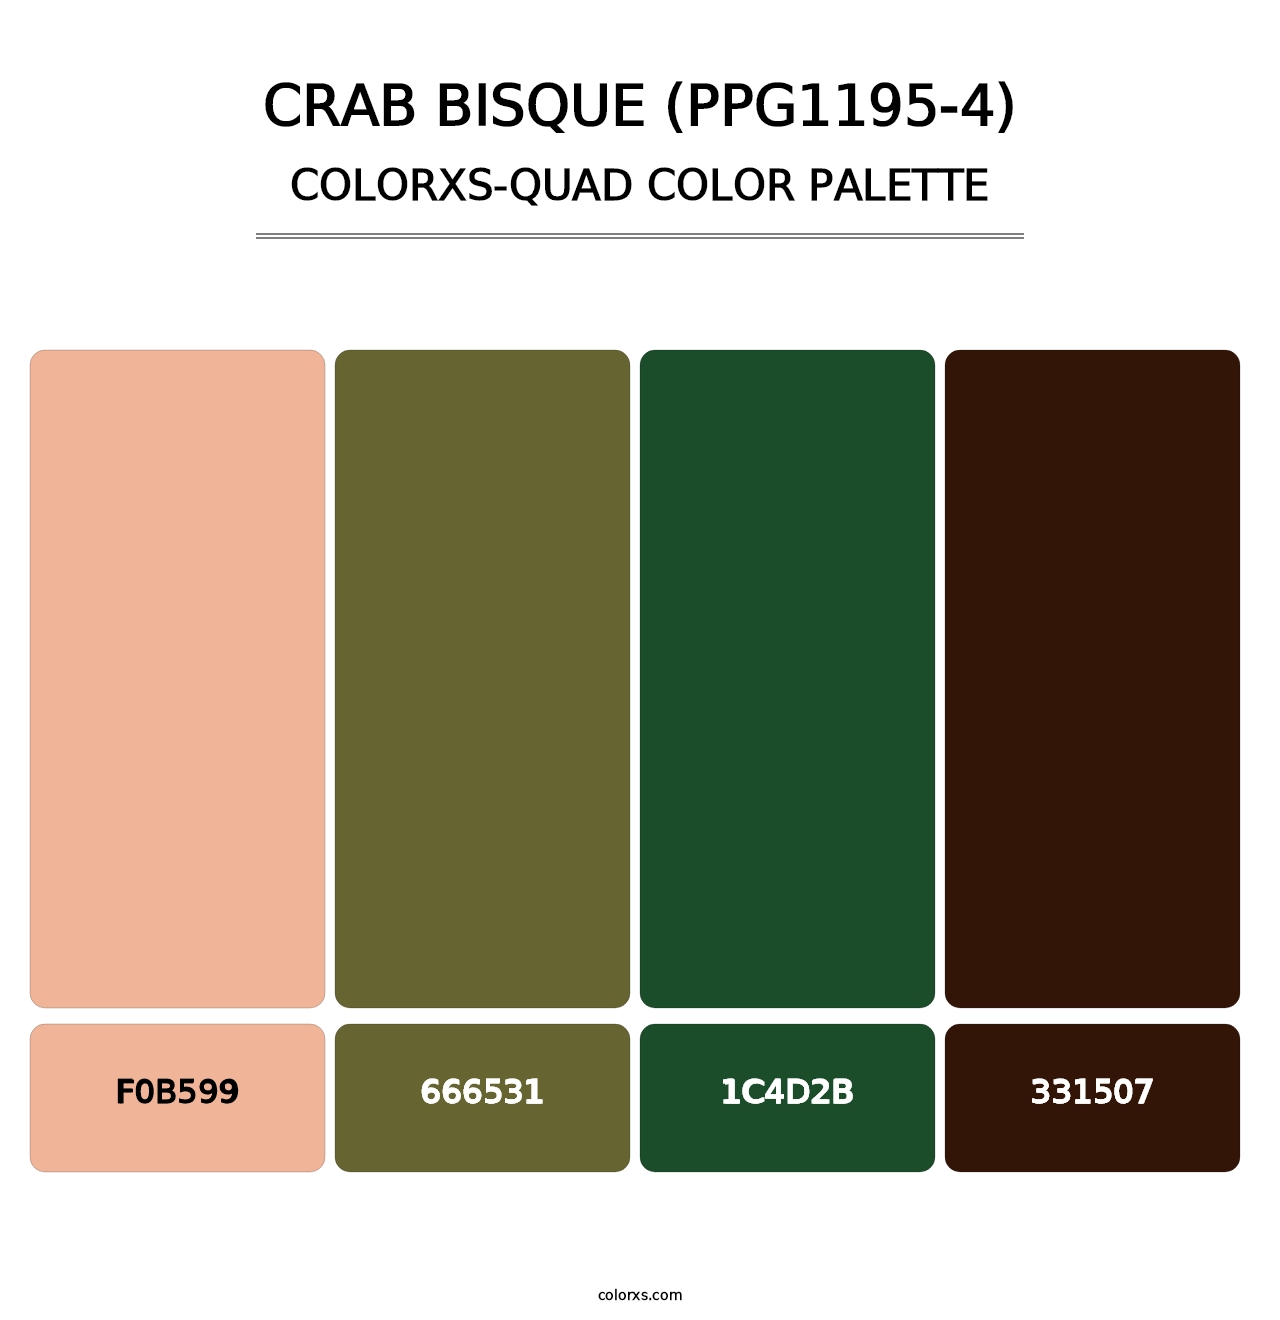 Crab Bisque (PPG1195-4) - Colorxs Quad Palette